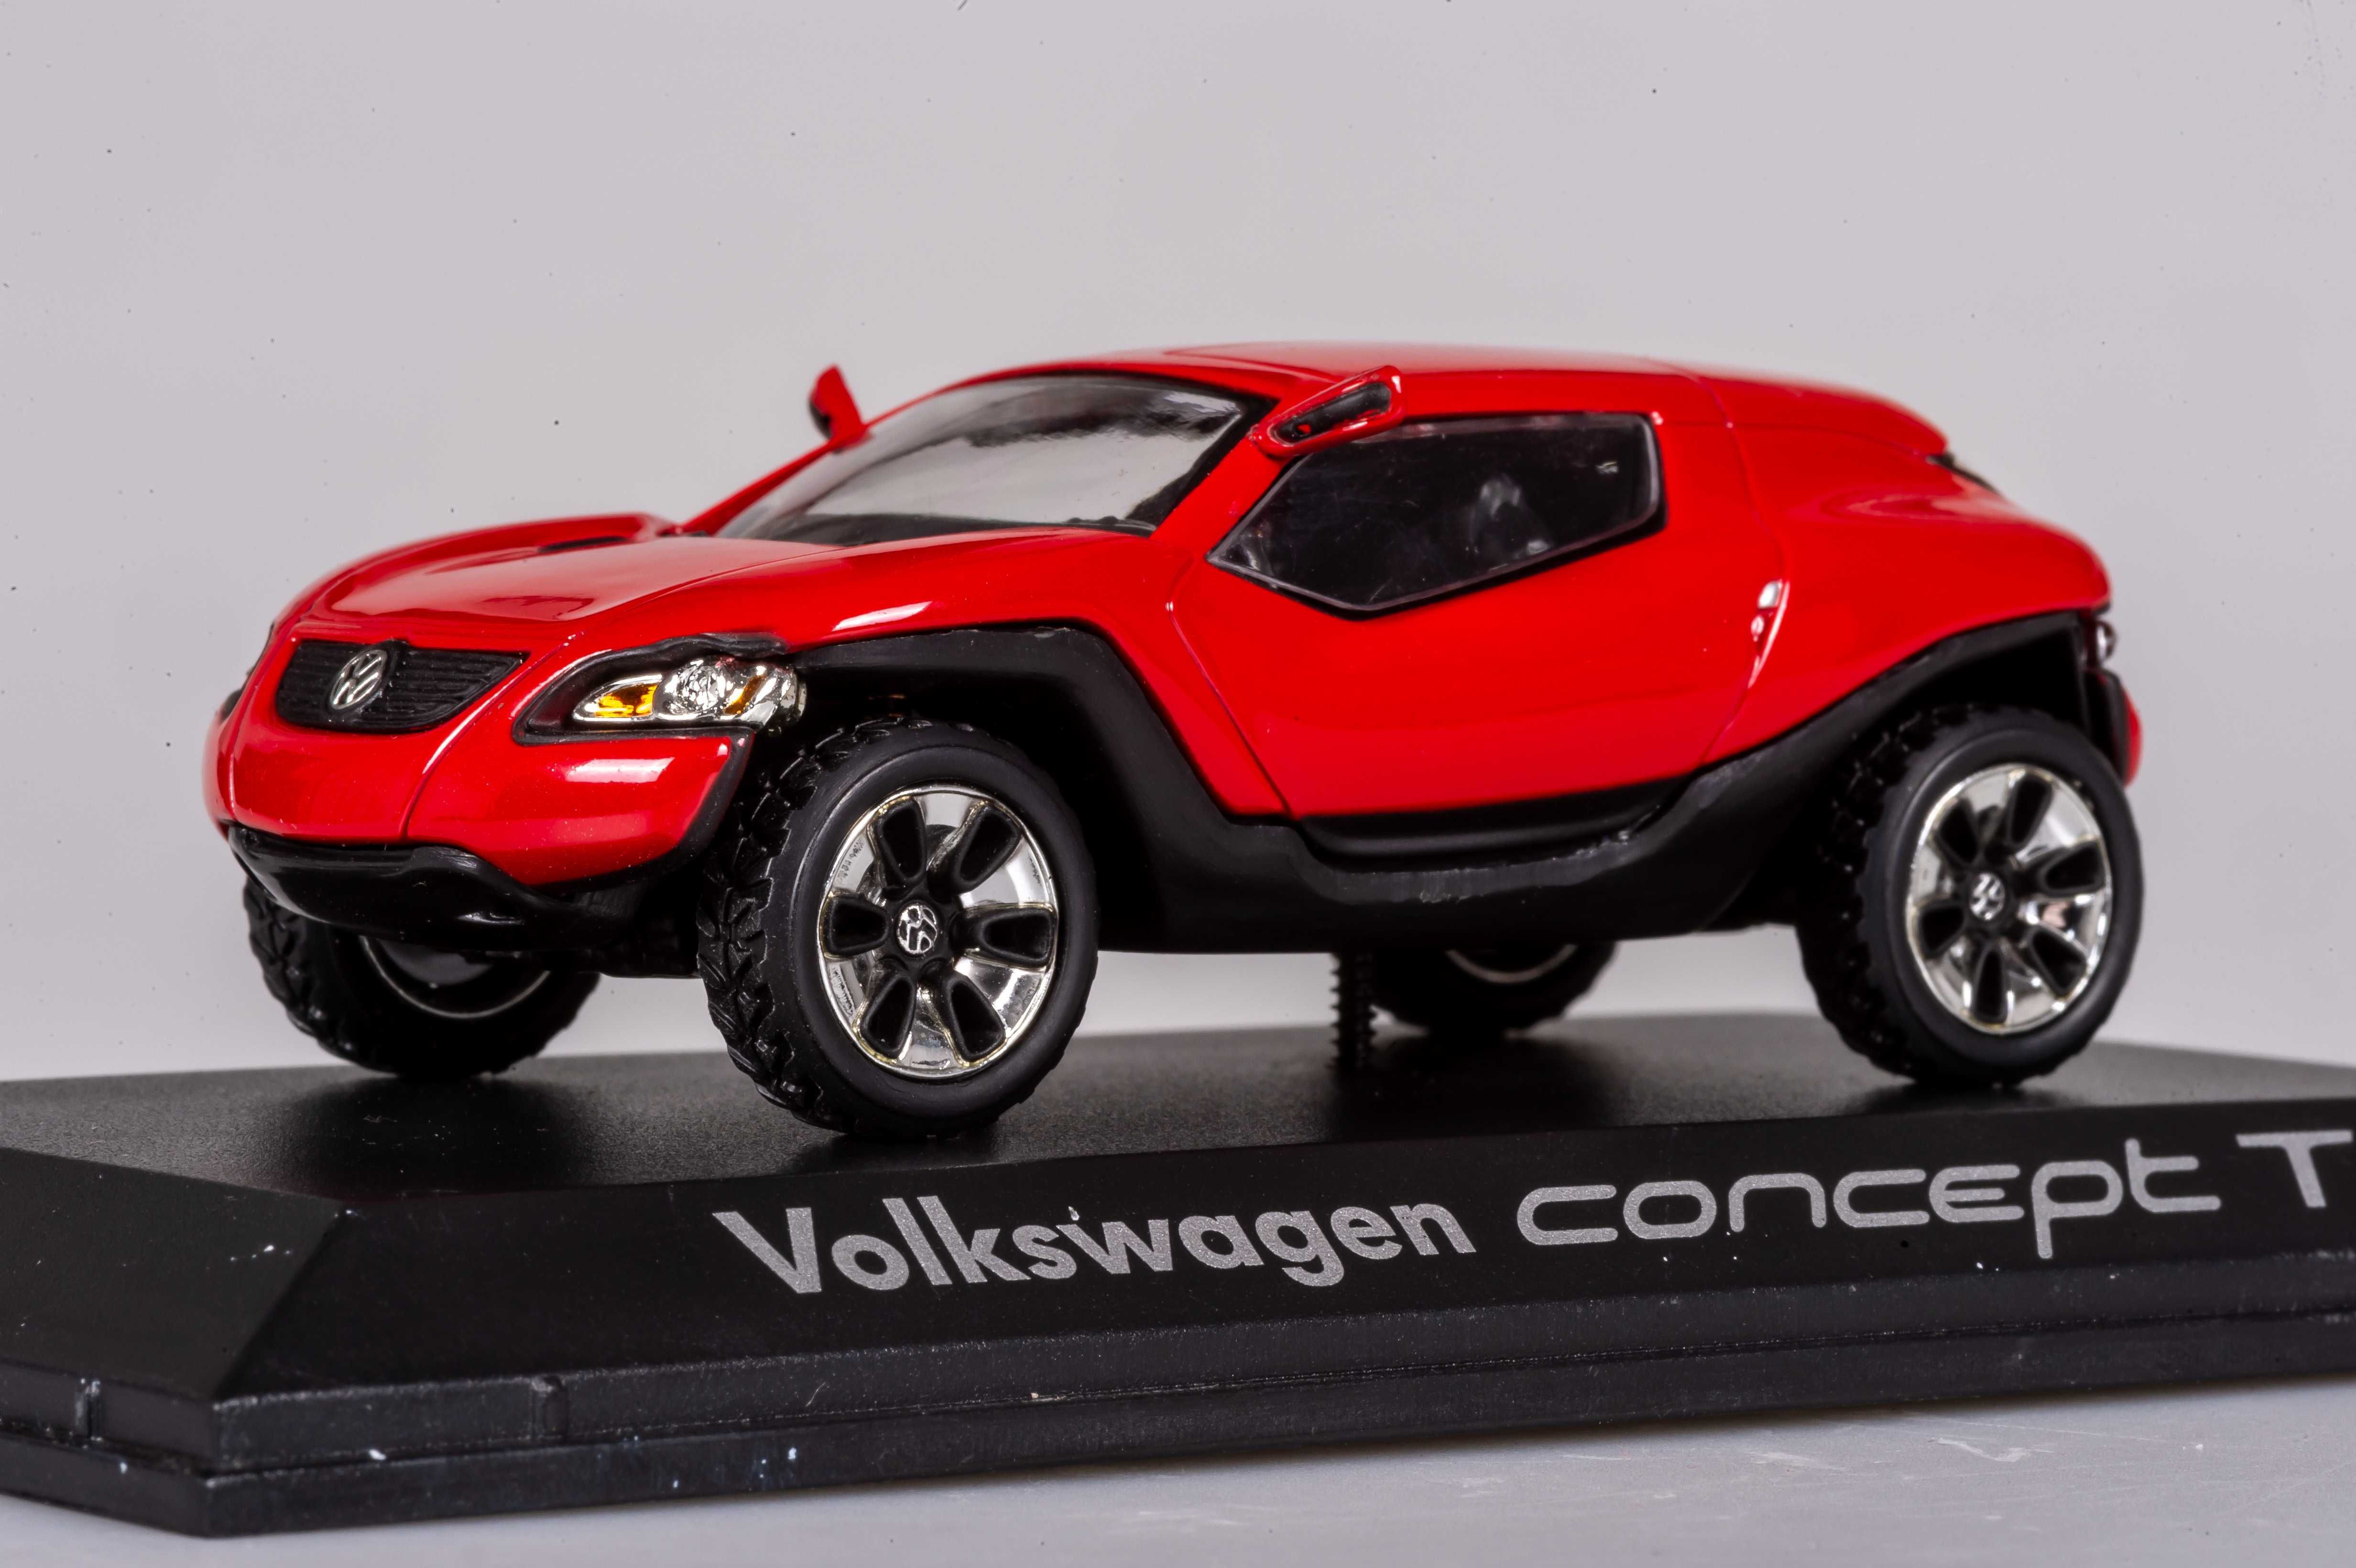 1/43 macheta Volkswagen Concept T - norev